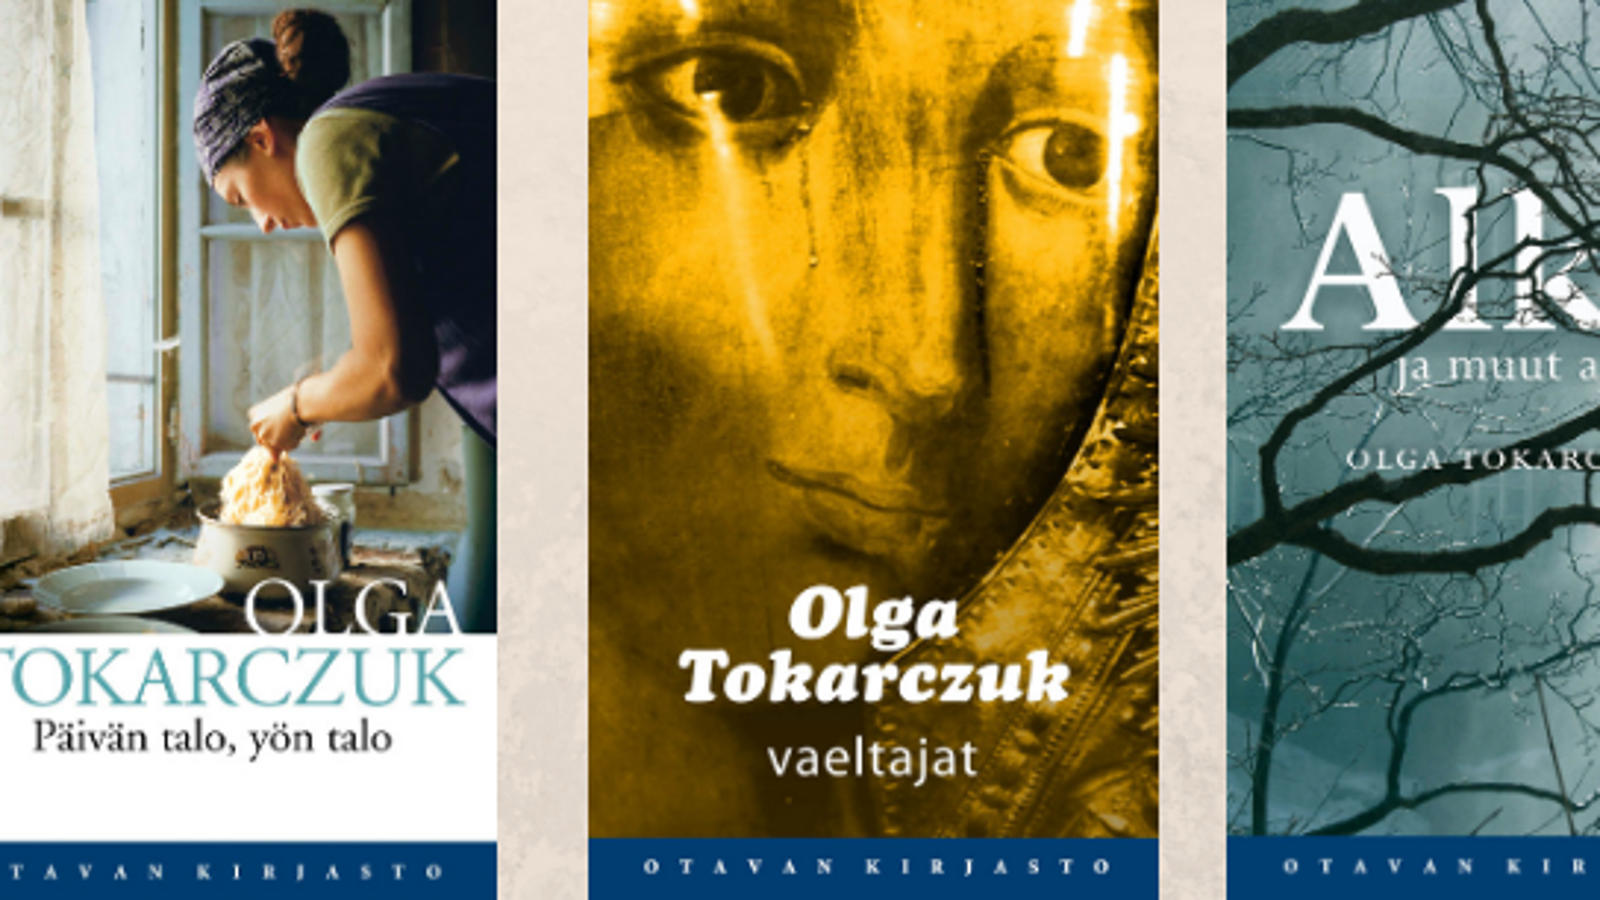 Kuvassa on Nobel-palkitun Olga Tokarczukin kolmen suomeksi julkaistun kirjan  kansien kuvat. Vasemman puoleisessa on kirjoittajan nimi ja kirjan nimi Päivän talo, yön talo.  Kannen kuvassa on nainen kumartuneena ottamassa spagettia padasta lautaselle keittiössä ikkunan ääressä.  Keskimmäisessä kuvassa on madonnan kasvot kullan värisestä patsaasta. Kirjoittajan nimen lisäksi on alhaalla kirjan nimi Vaeltajat.  Reunimmaisesta kirjan kannesta on puolet ja taustalla on harmaa taivas ja lehdettömiä puunoksia. Kirjan nimiestä näkyy Alku ja muut.